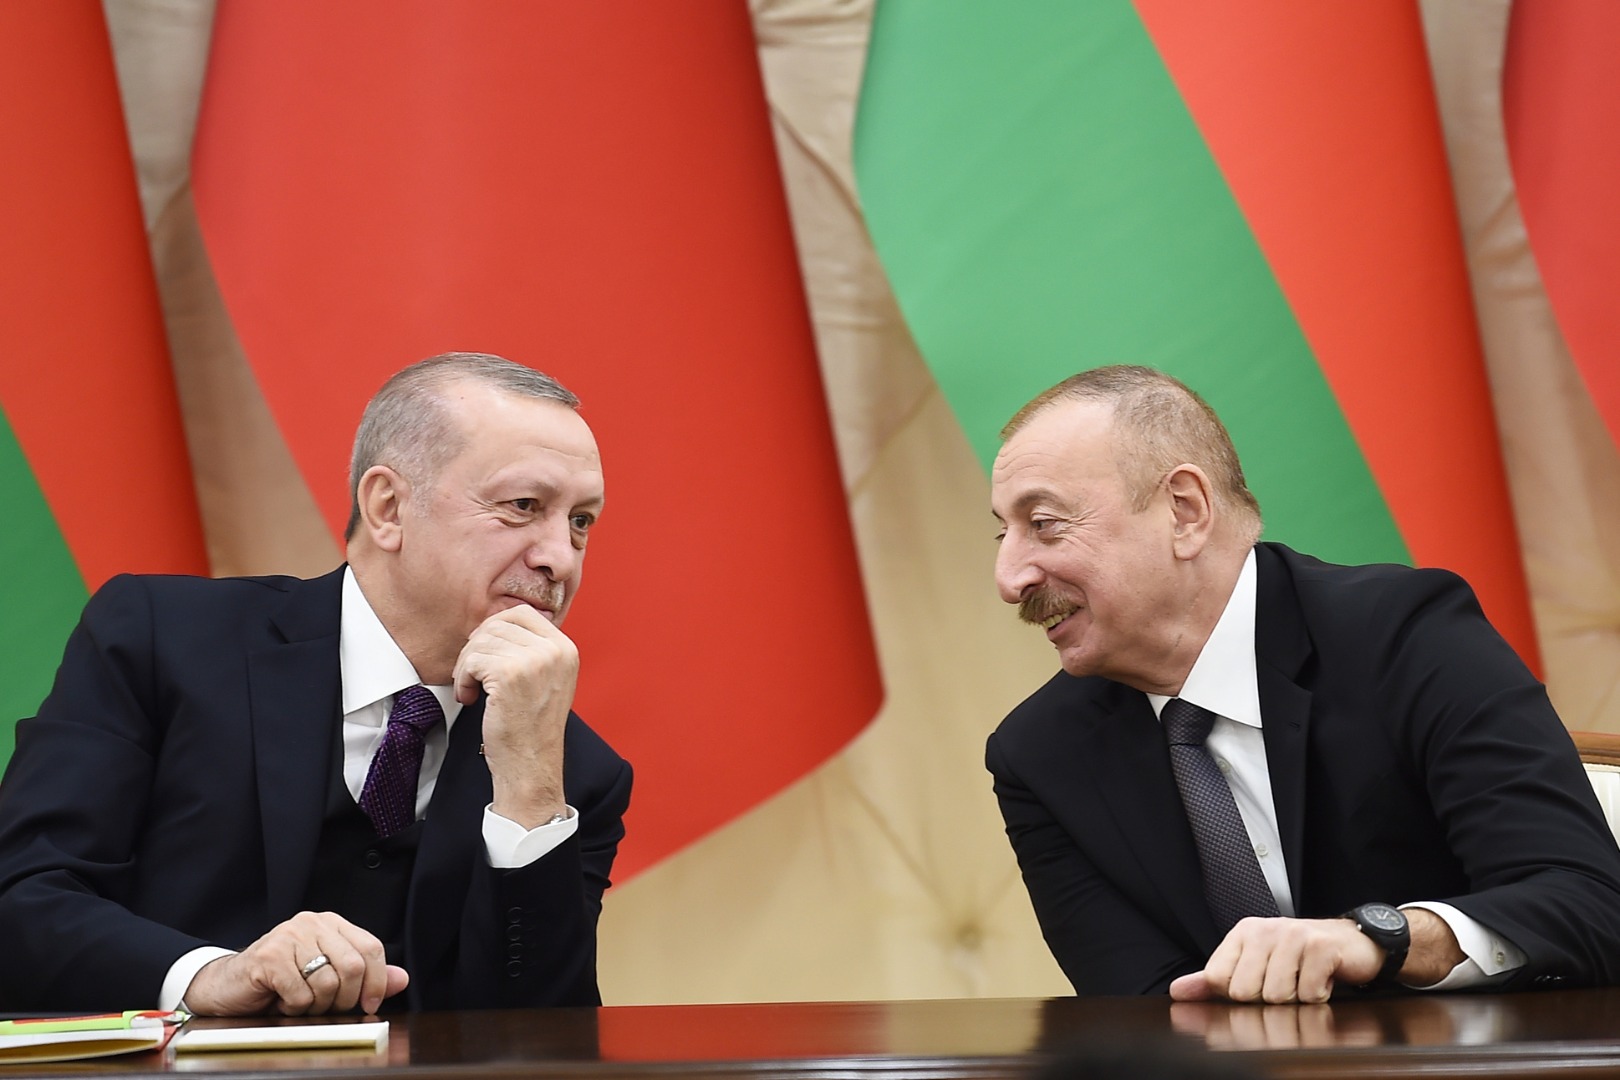 Erdoğan ve Aliyev görüştü